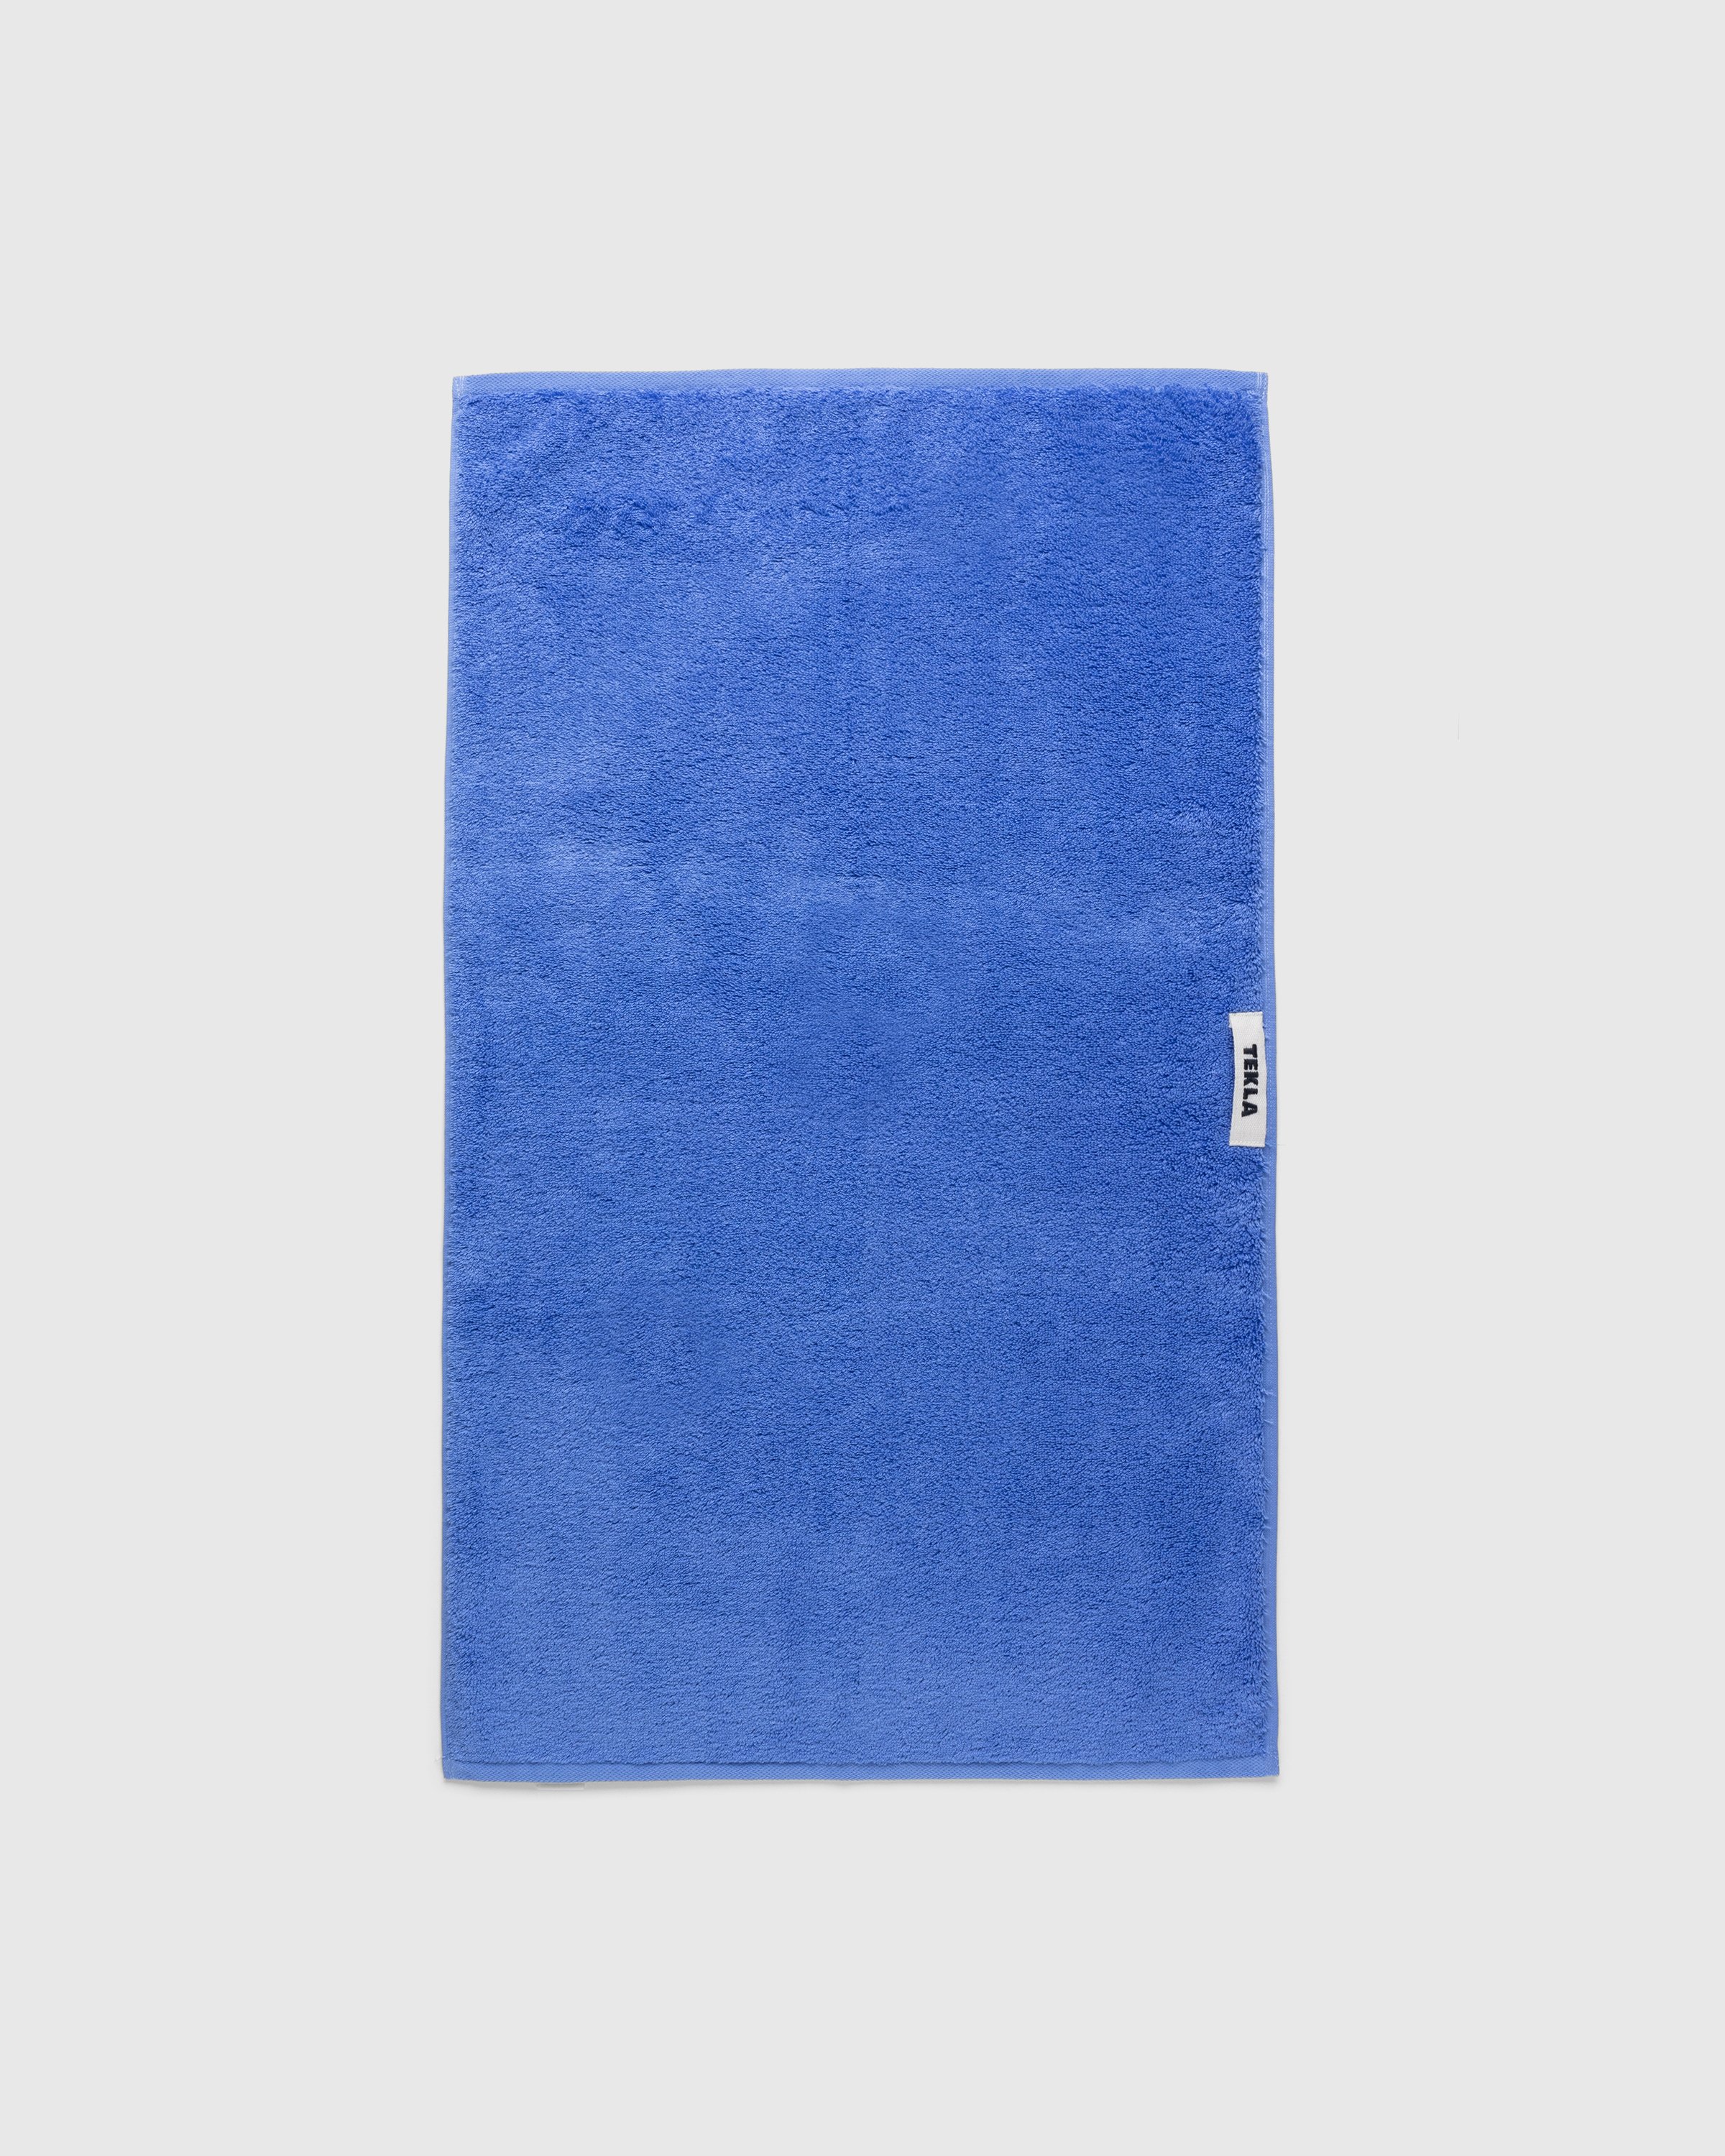 Tekla - Guest Towel Clear Blue - Lifestyle - Blue - Image 2